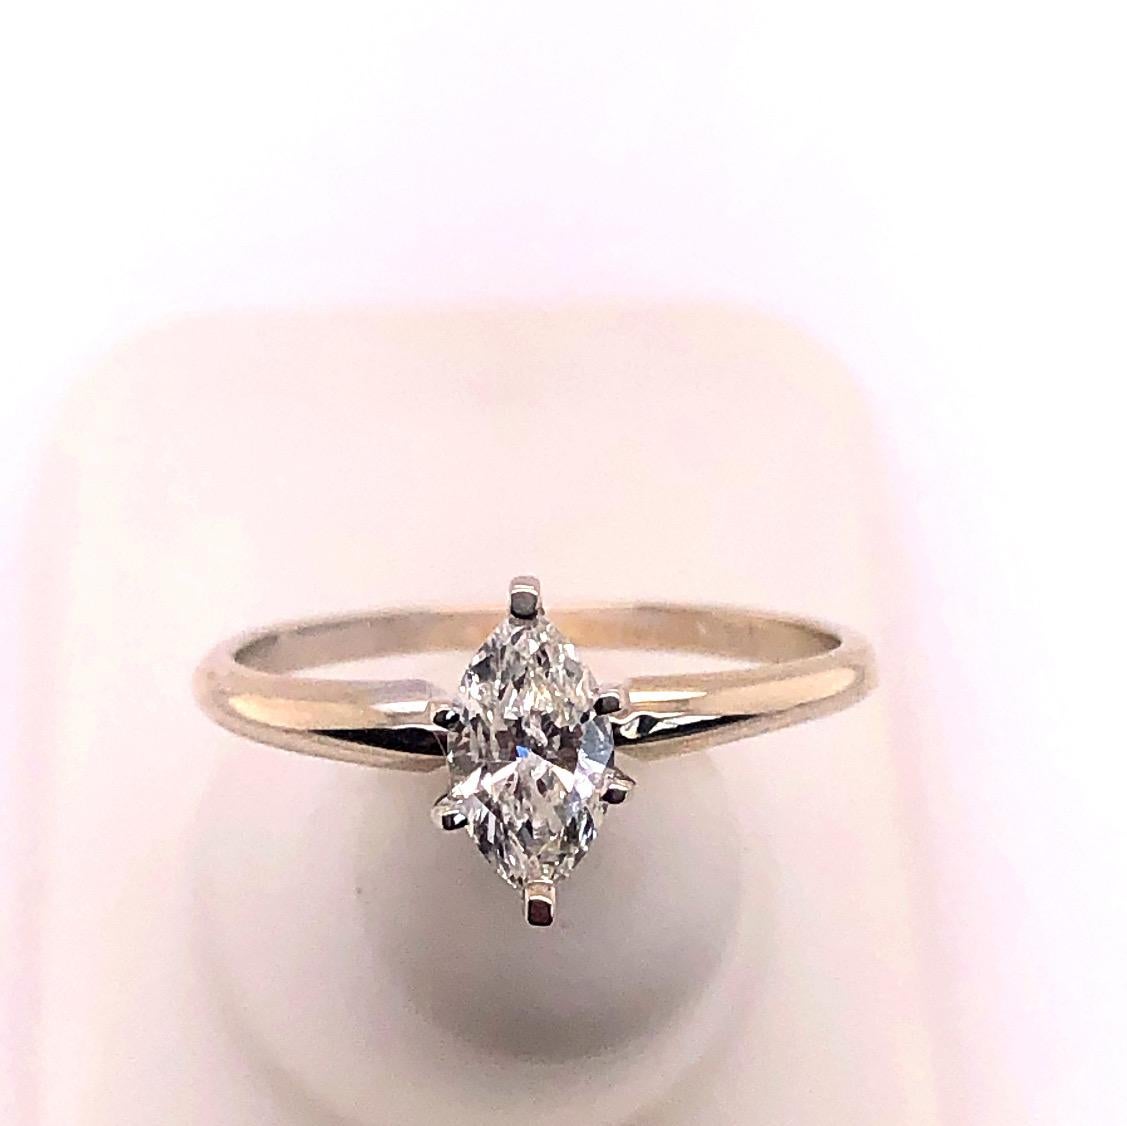 14 Karat White Gold Diamond Engagement Ring Size 7.
0.75 total diamond weight.
1.92 grams total weight.